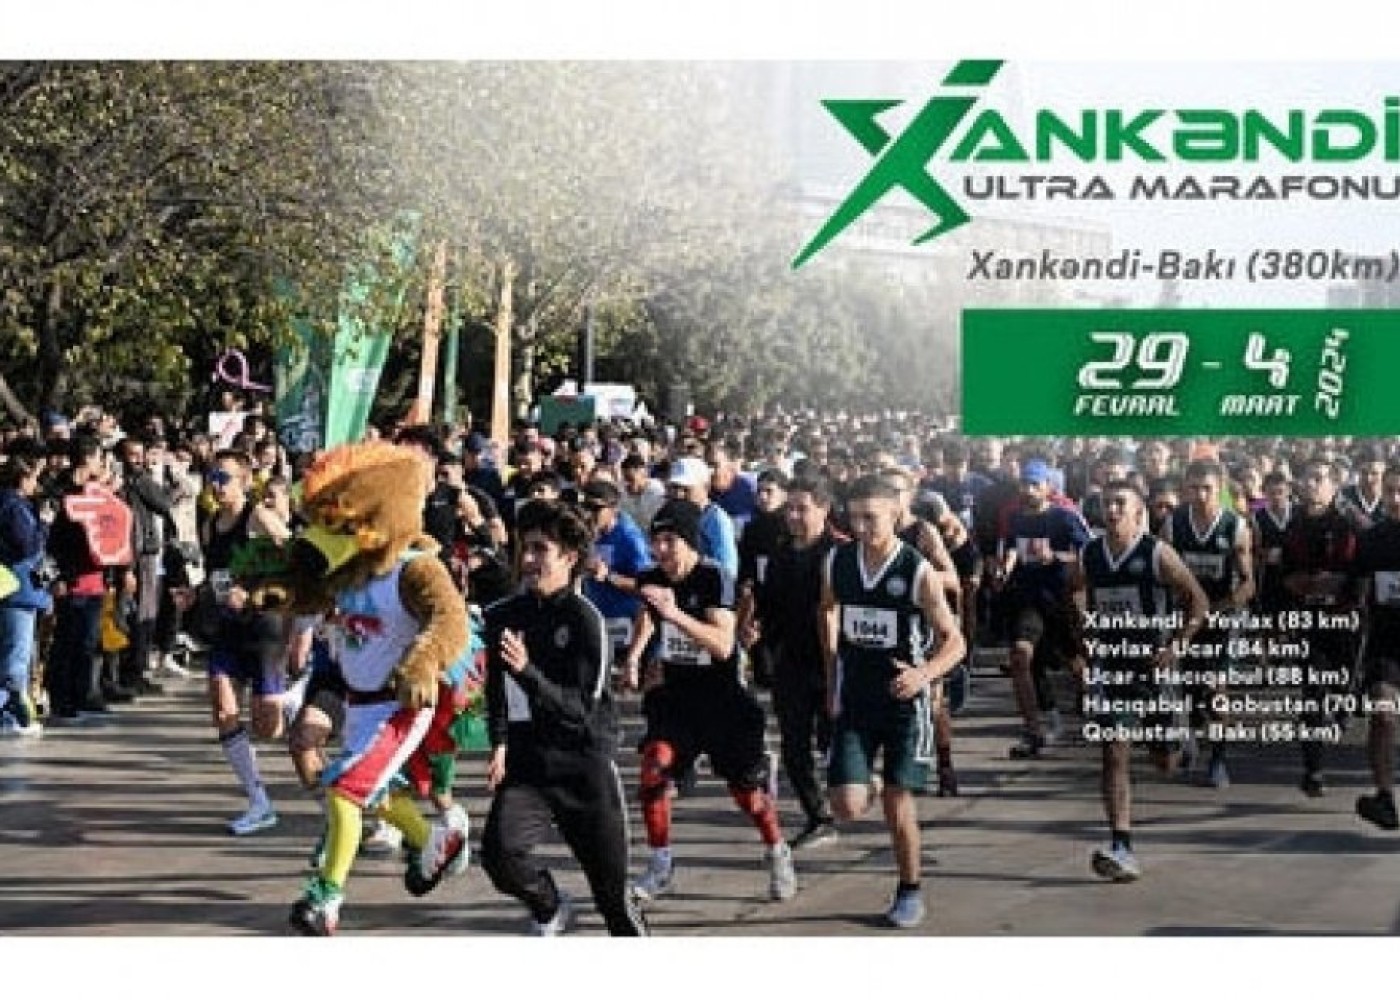 Xankəndi - Bakı ultra marafonu start götürüb 